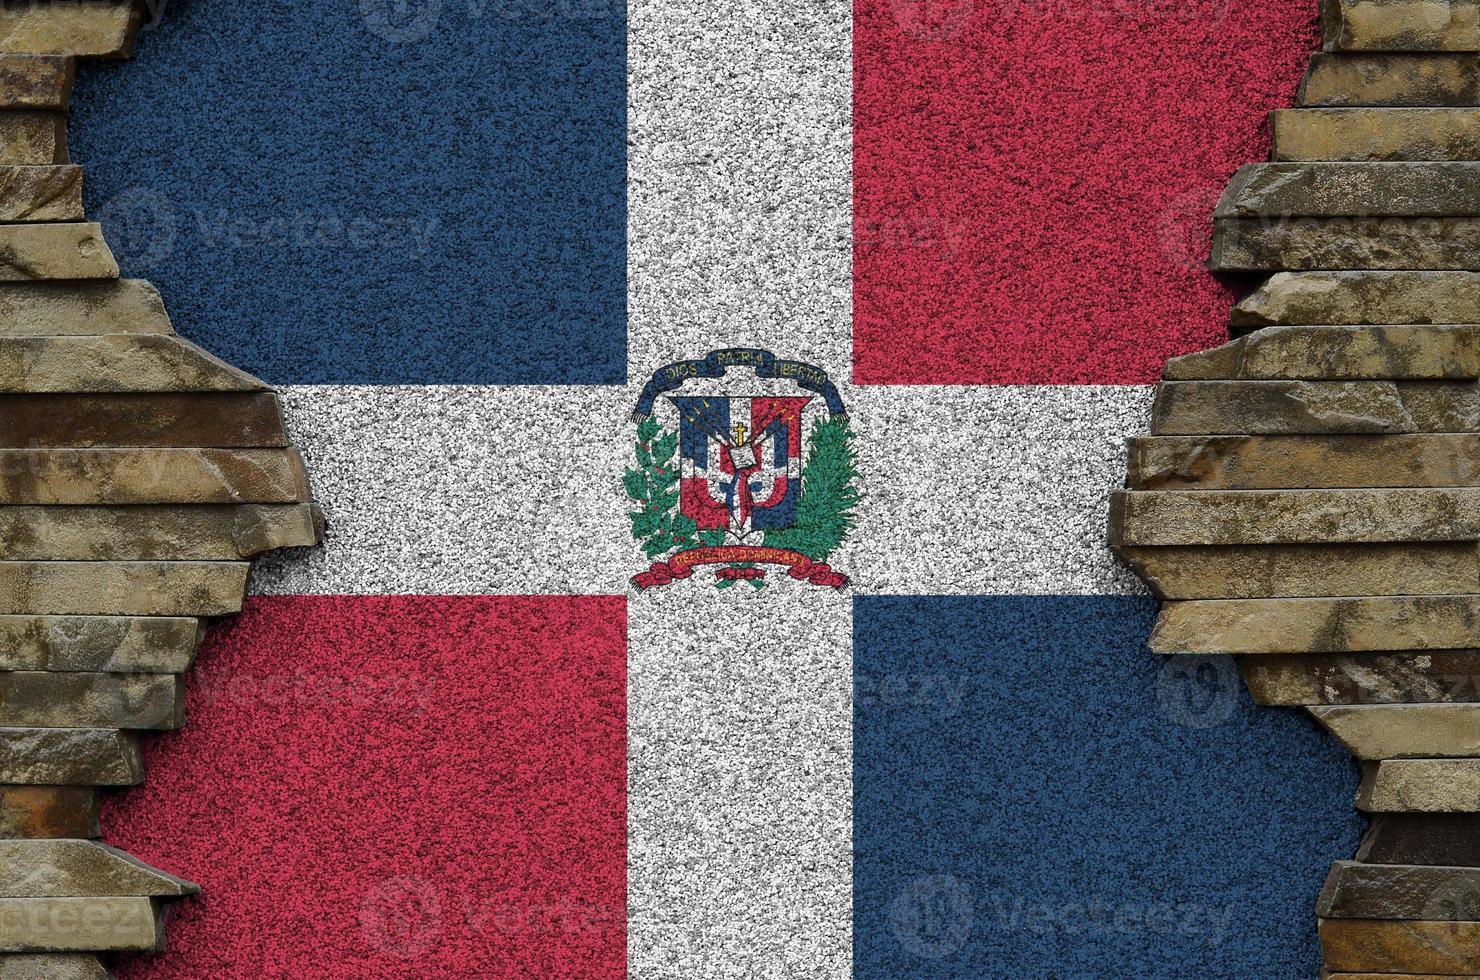 Dominikanska republik flagga avbildad i måla färger på gammal sten vägg närbild. texturerad baner på sten vägg bakgrund foto